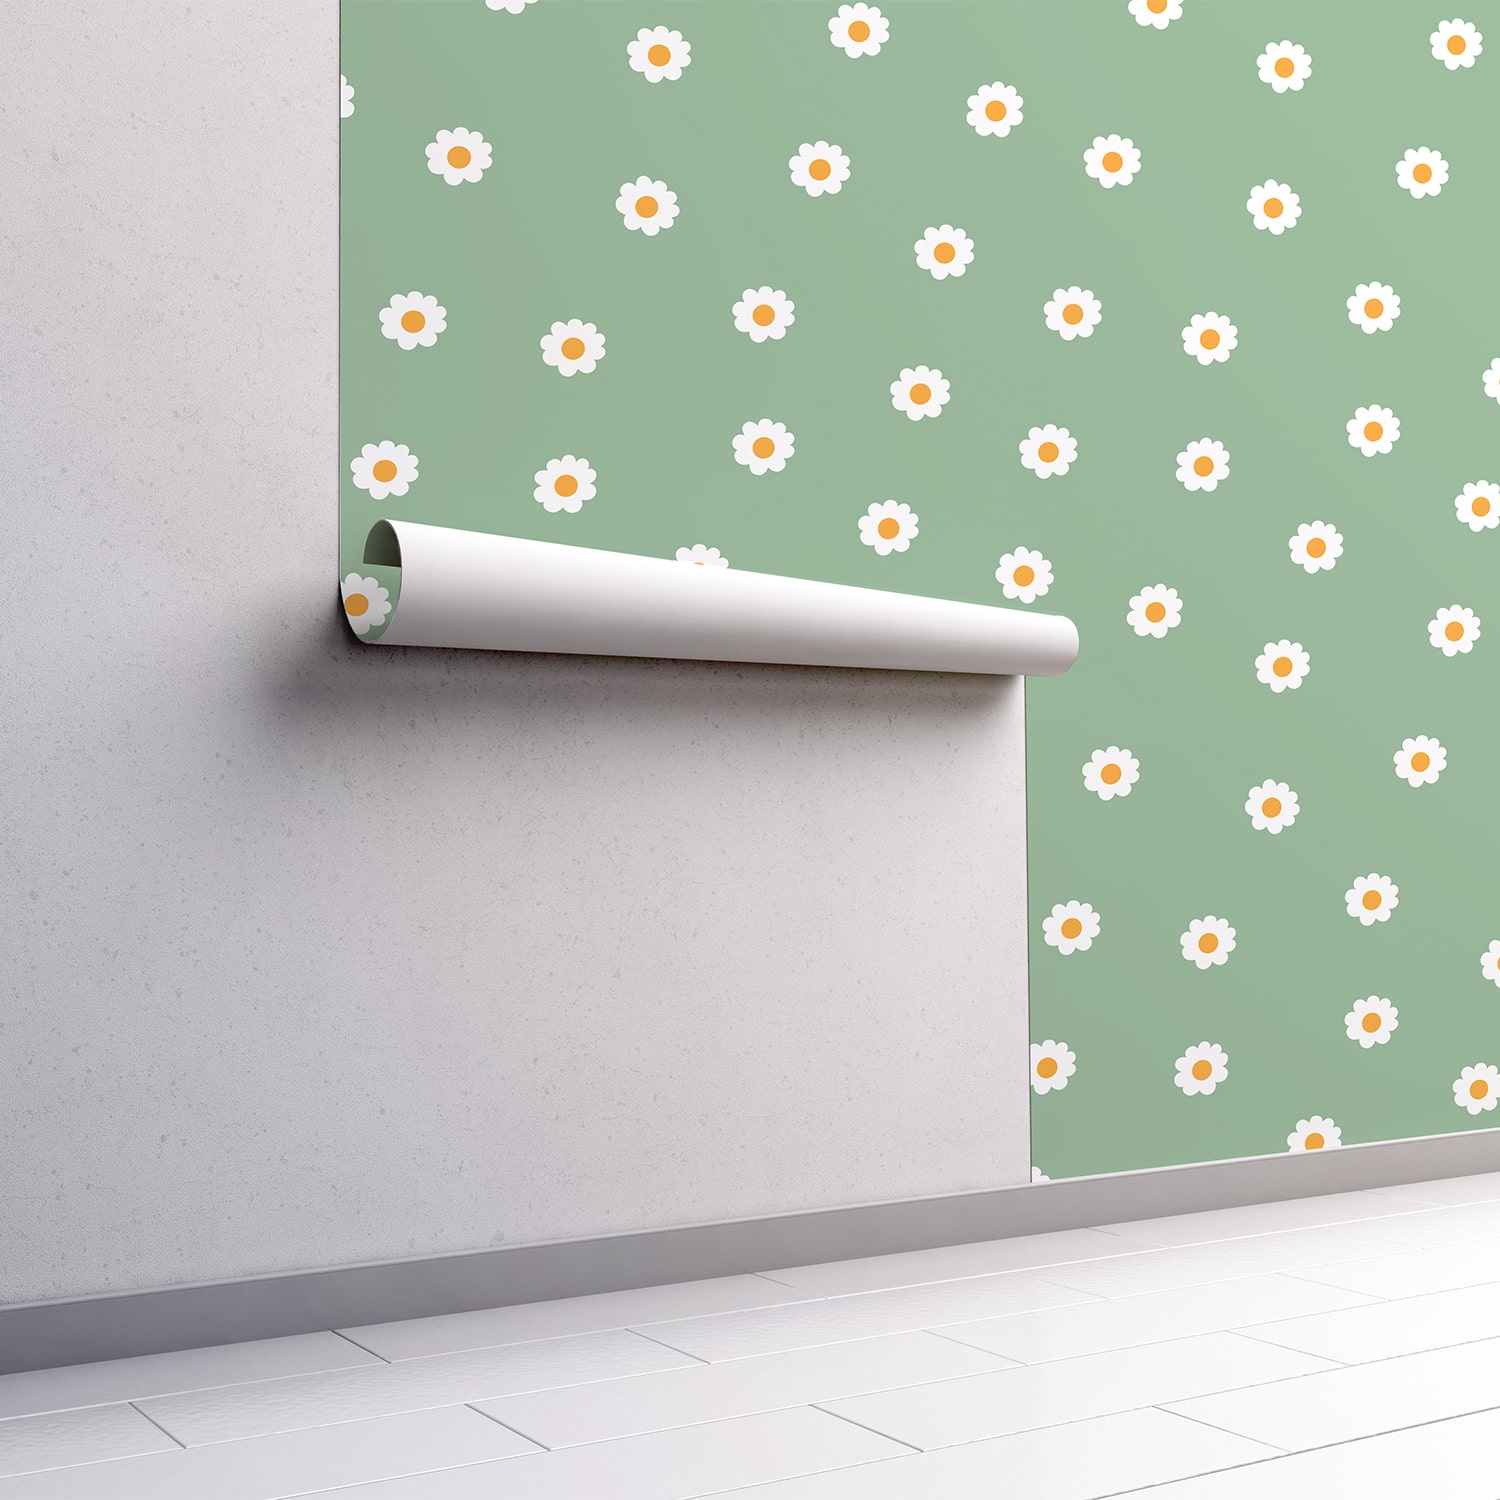 PP108-mur.rouleau-papier-peint-adhesif-decoratif-revetement-vinyle-motifs-marguerite-fond-vert-renovation-meuble-mur-min